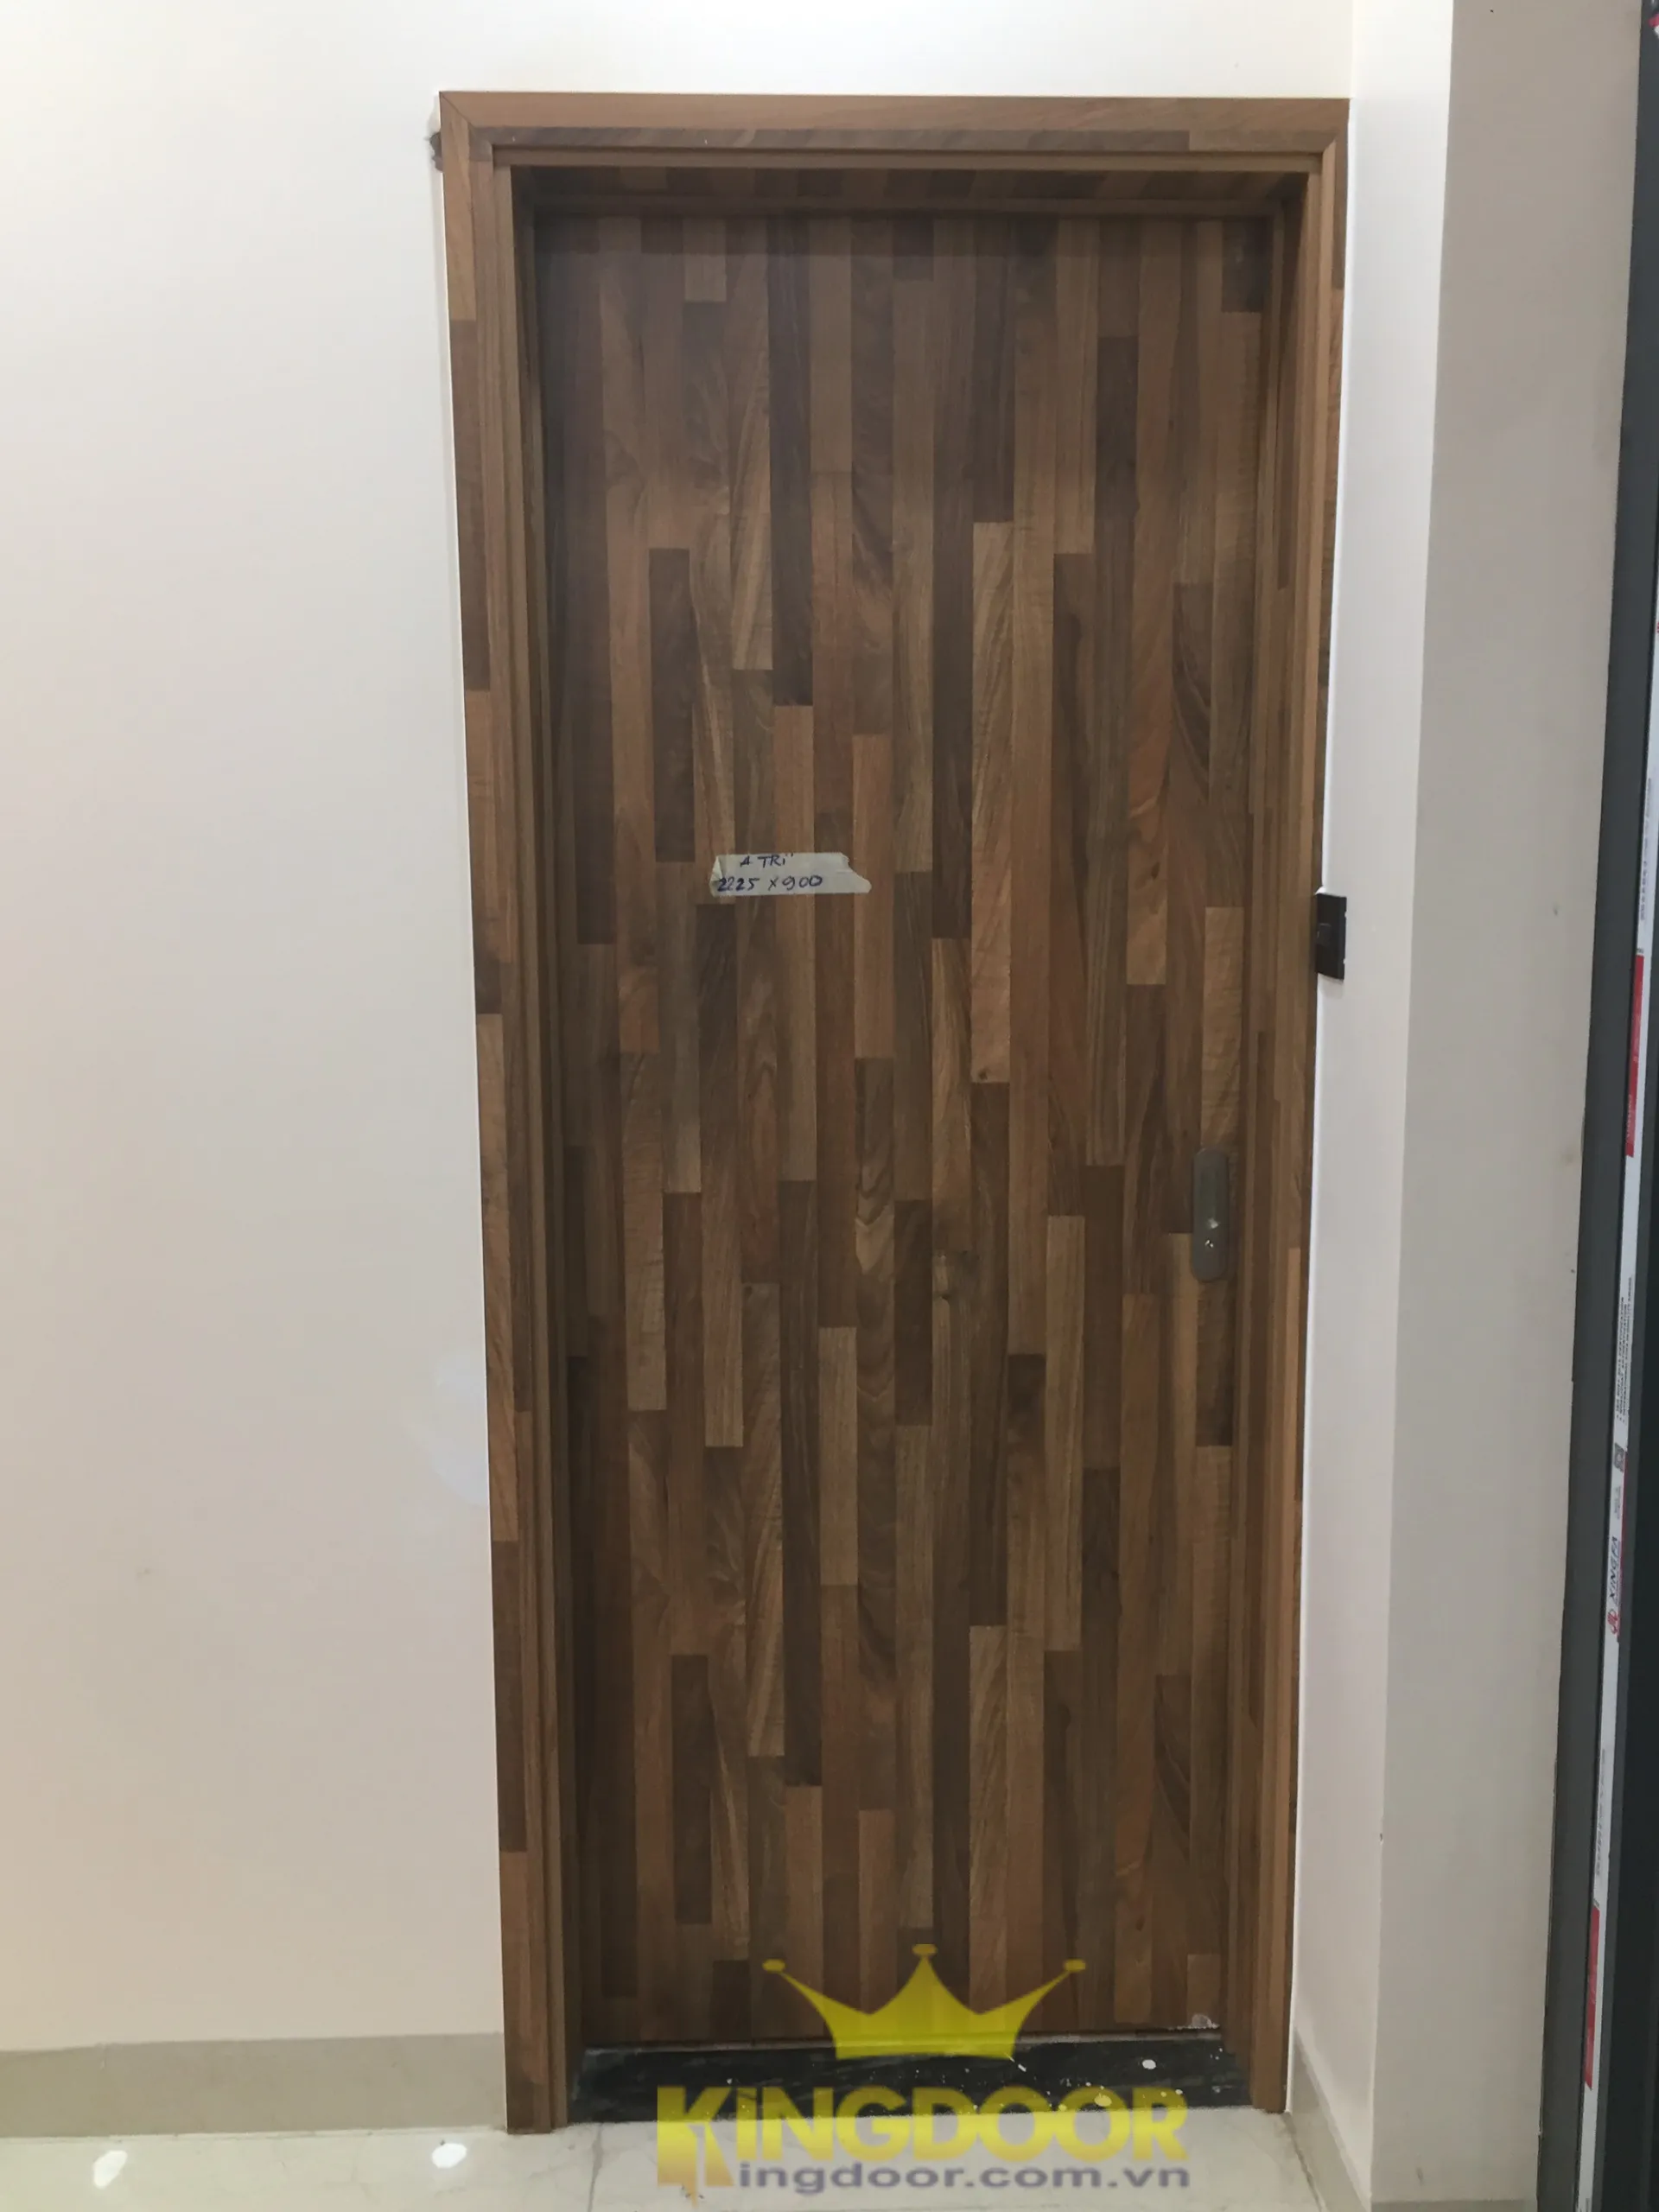 Kingdoor thi công lắp dựng hoàn thiện cửa gỗ phong ngủ giá rẻ tại Bình Tân - cửa gỗ MDF Laminate.